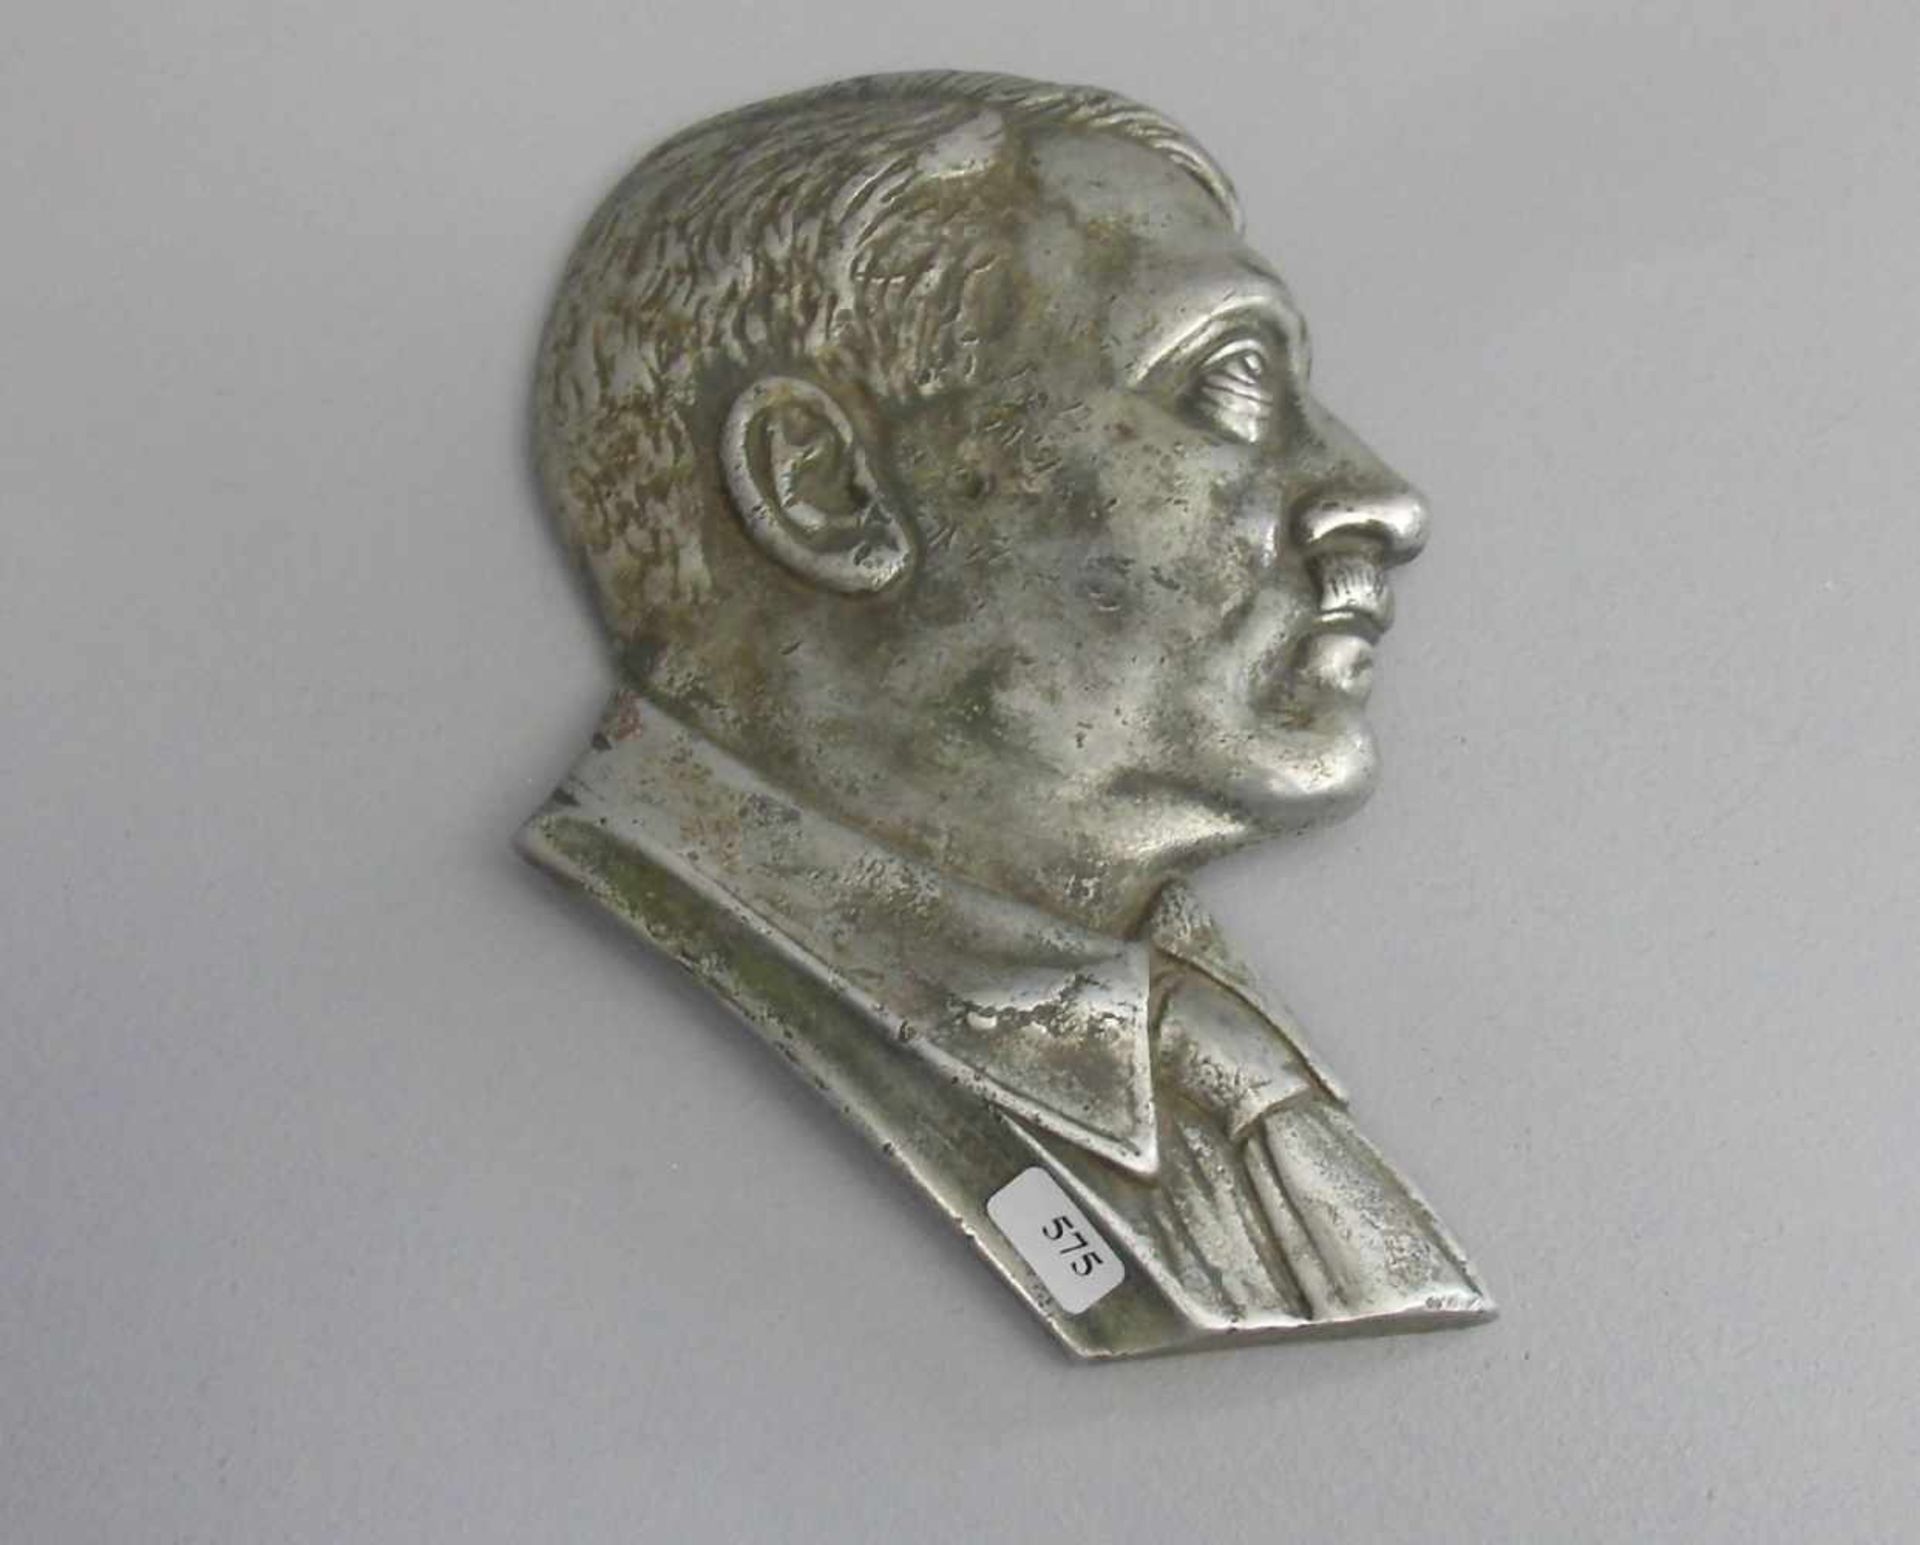 RELIEF "Adolf Hitler", silberfarbener Metallguss, 1930er Jahre. Porträt Hitlers in Profil nach